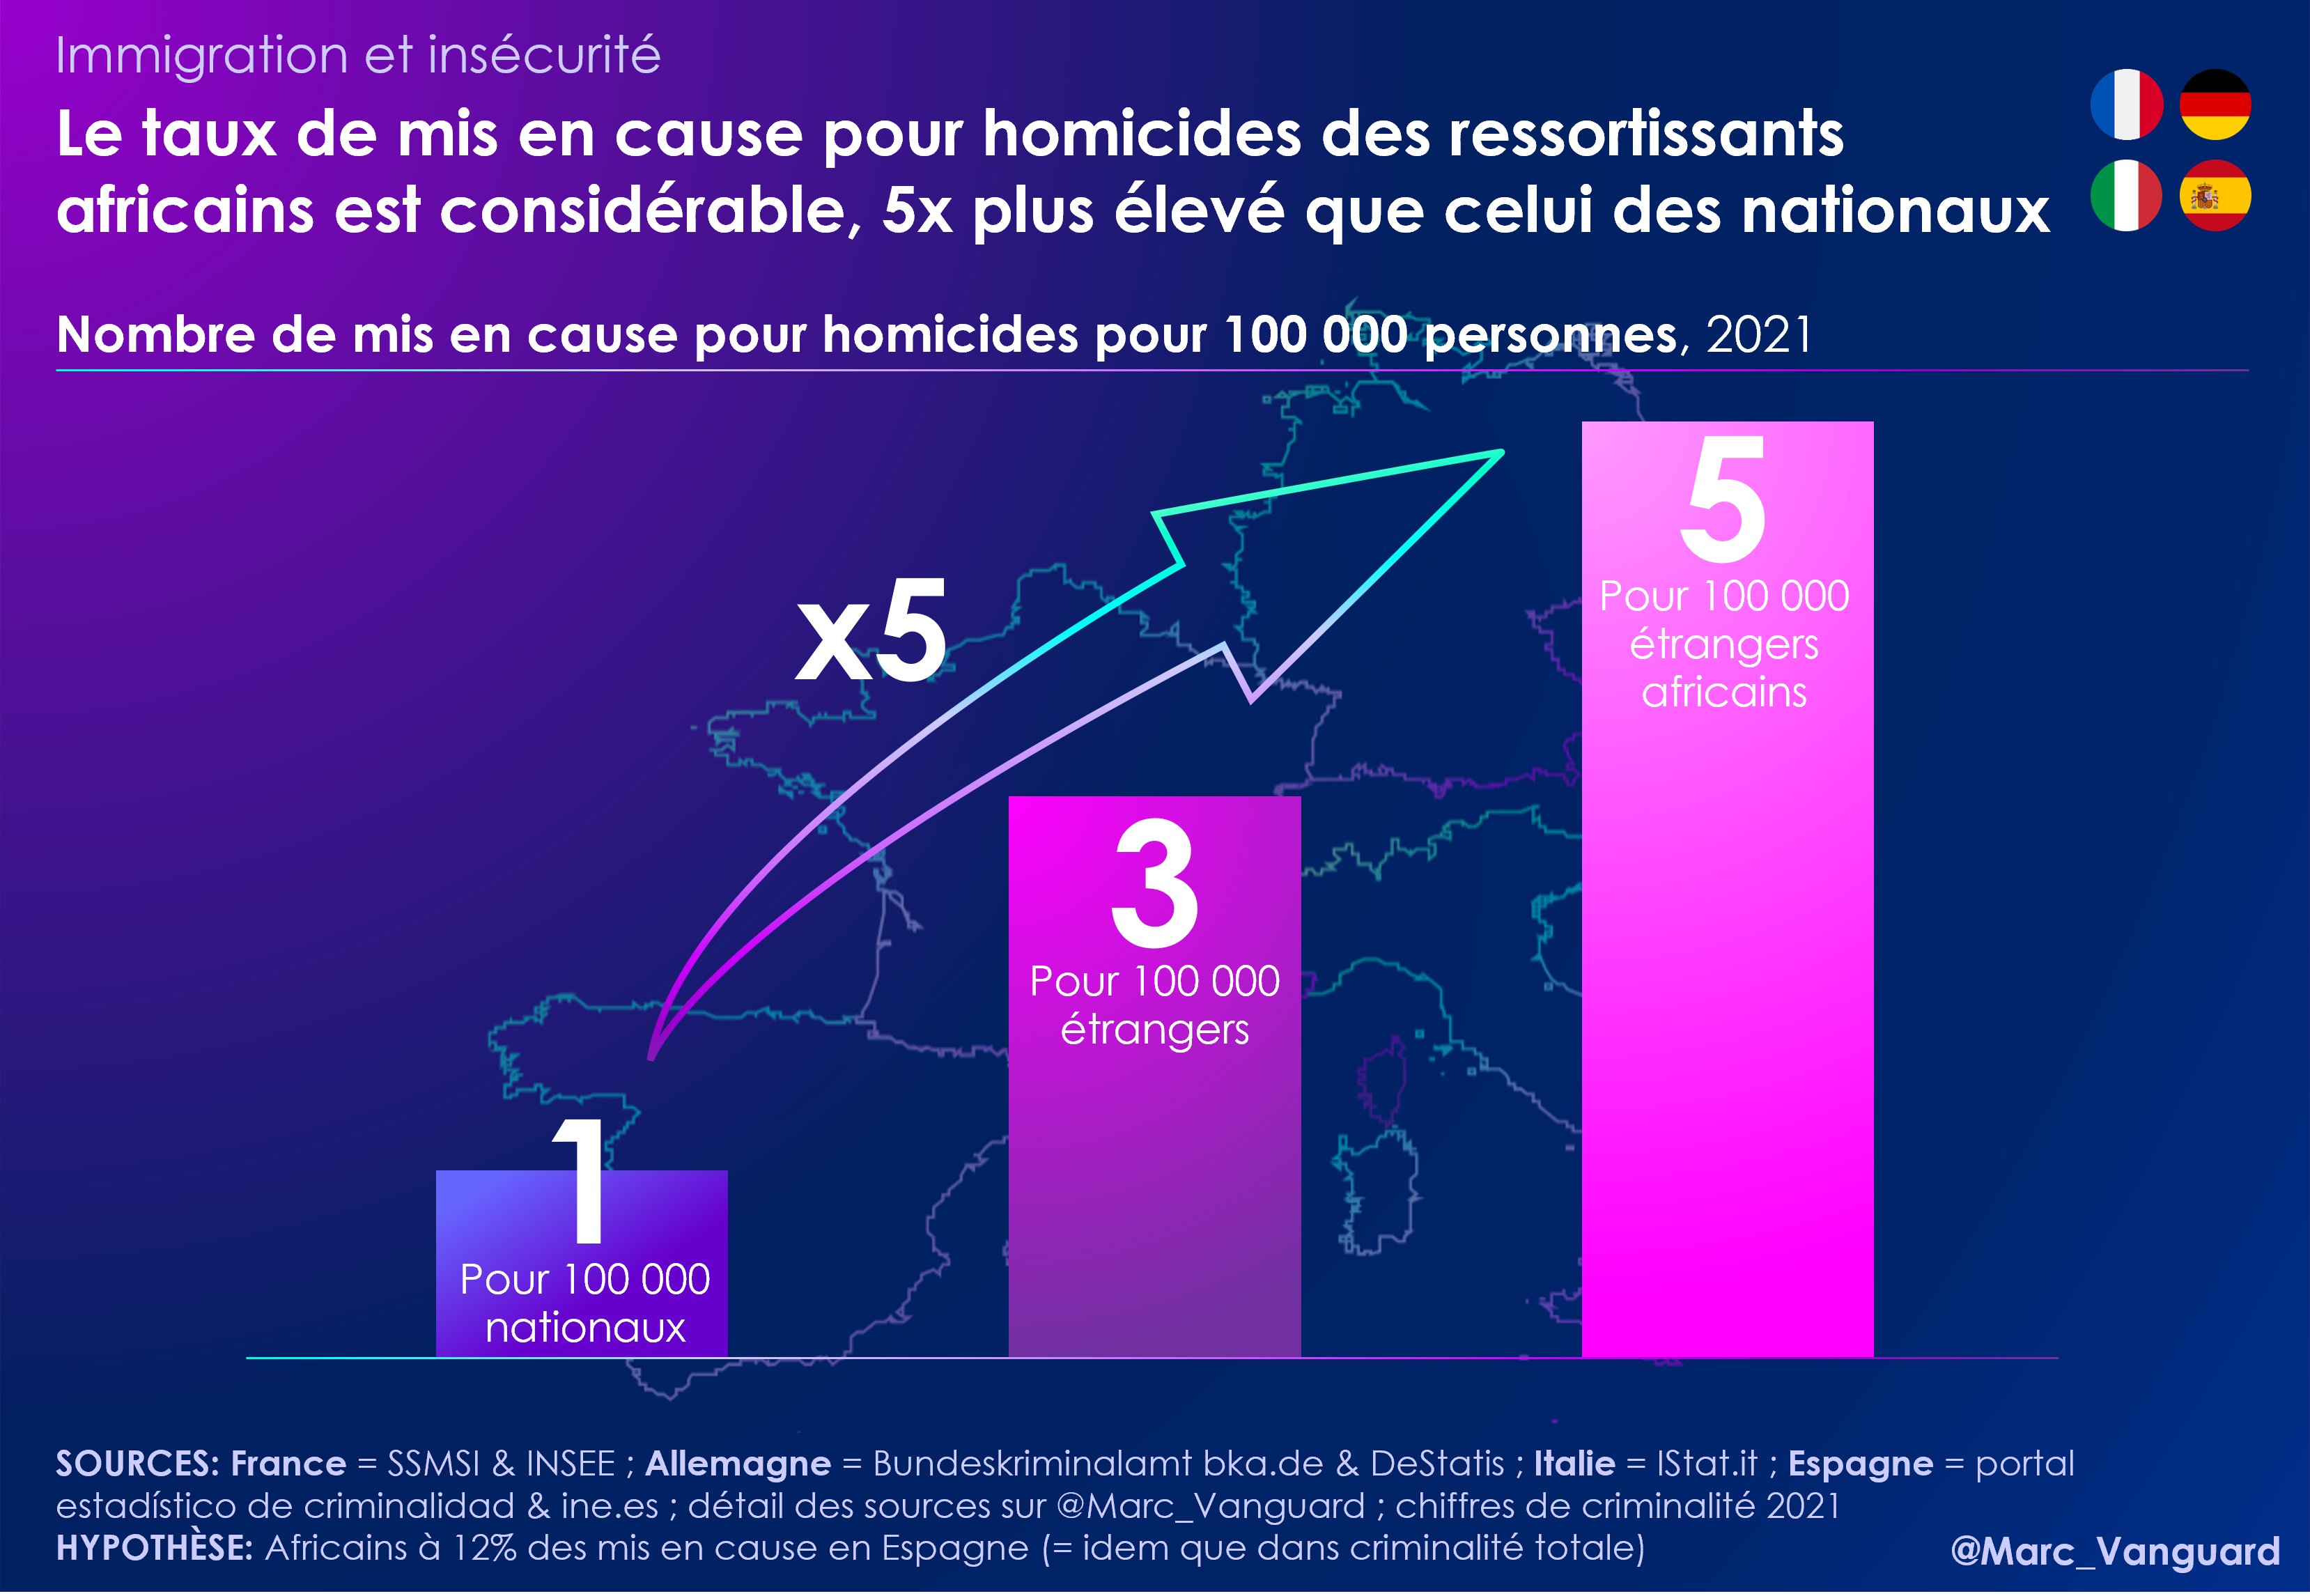 Marc Vanguard on Twitter: "🚨Immigration &amp; insécurité Chaque année,  dans les 4 + grands pays continentaux d'Europe de l'Ouest, 2000 victimes  sont tuées par #homicide. D'après les données policières, 25% des mis